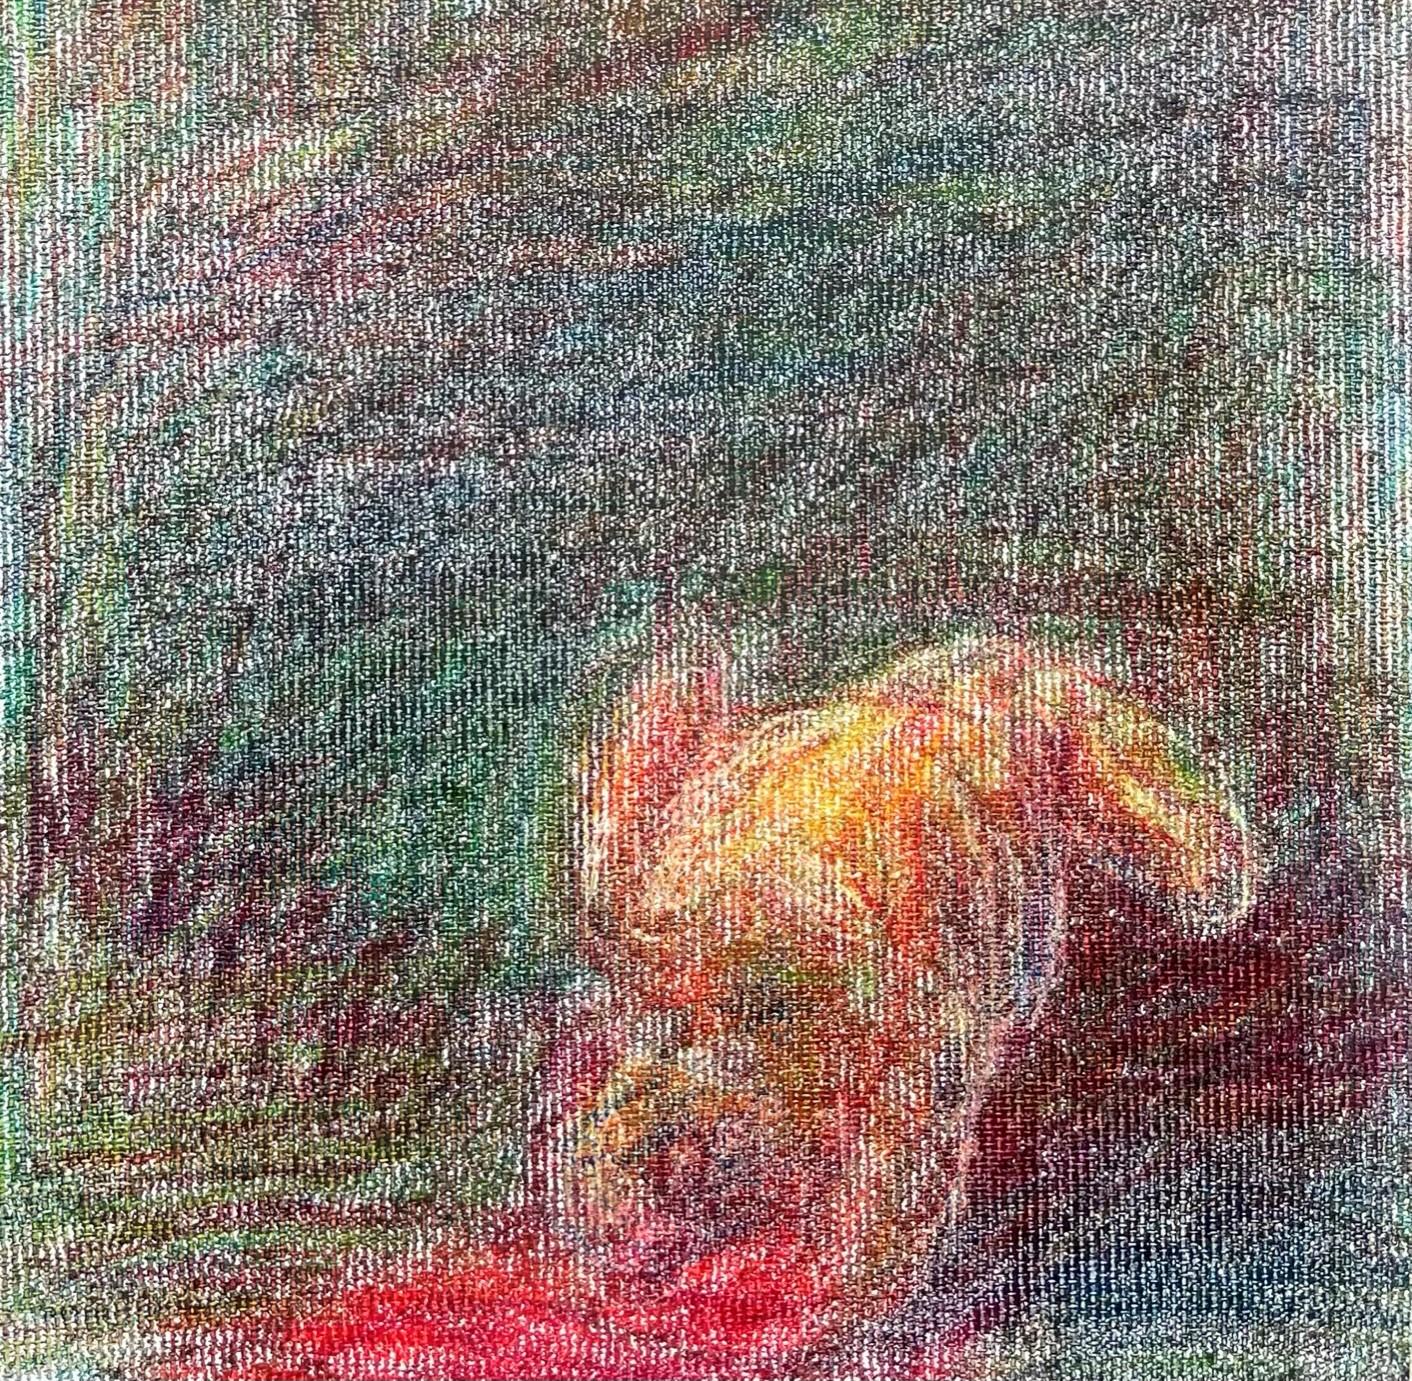 Body in the Field #10 - Contemporain, rouge, jaune, vert, 21e siècle - Expressionniste Art par Zsolt Berszán